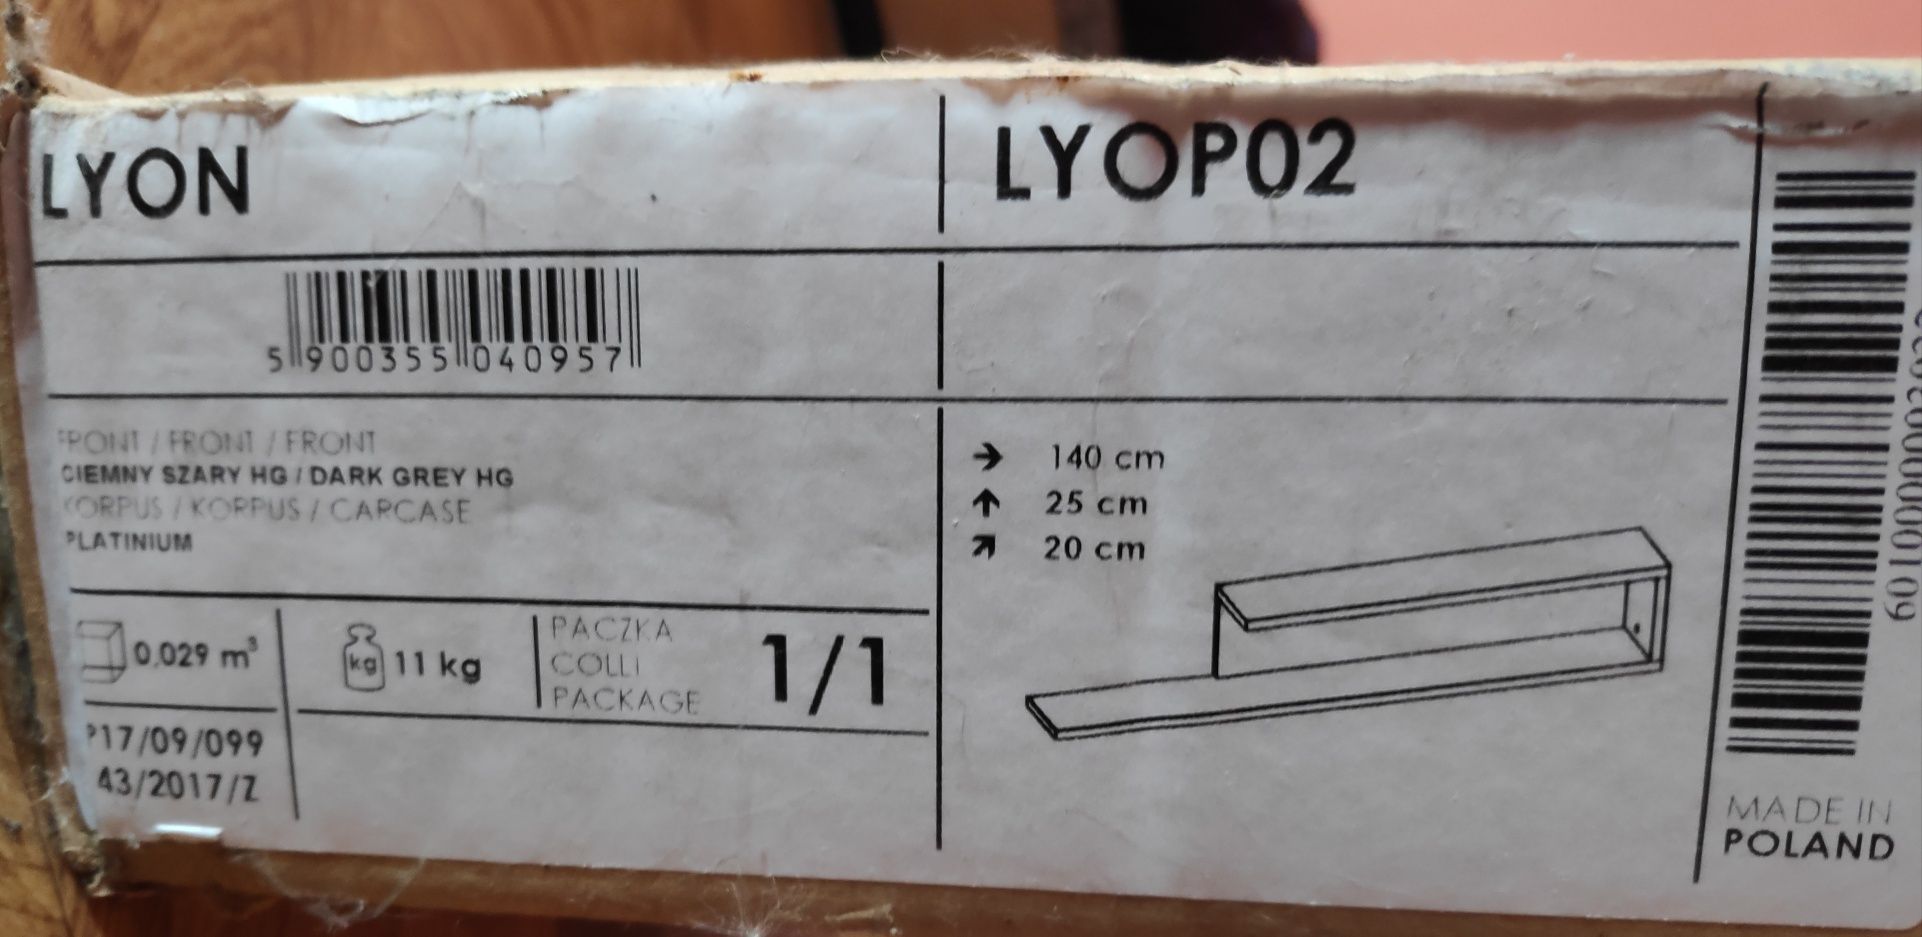 Półka  wisząca Lyon lyop02 , szafka, regał.